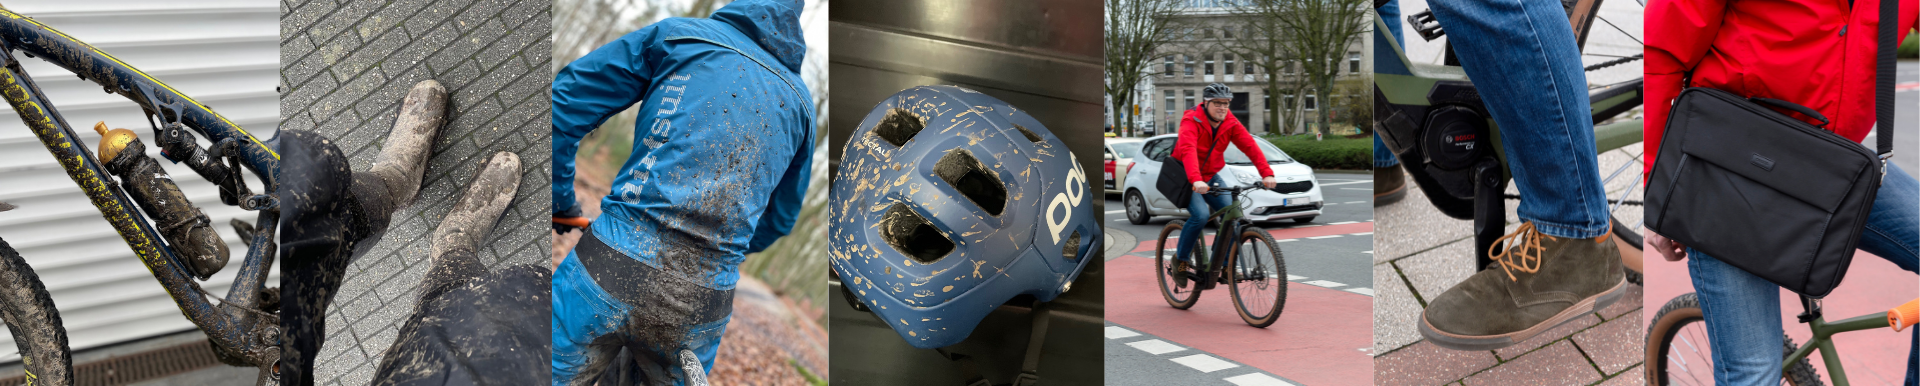 Bilder Collage aus unserem Zwei Radler - Zwei Routen Interview über Mountainbikes.